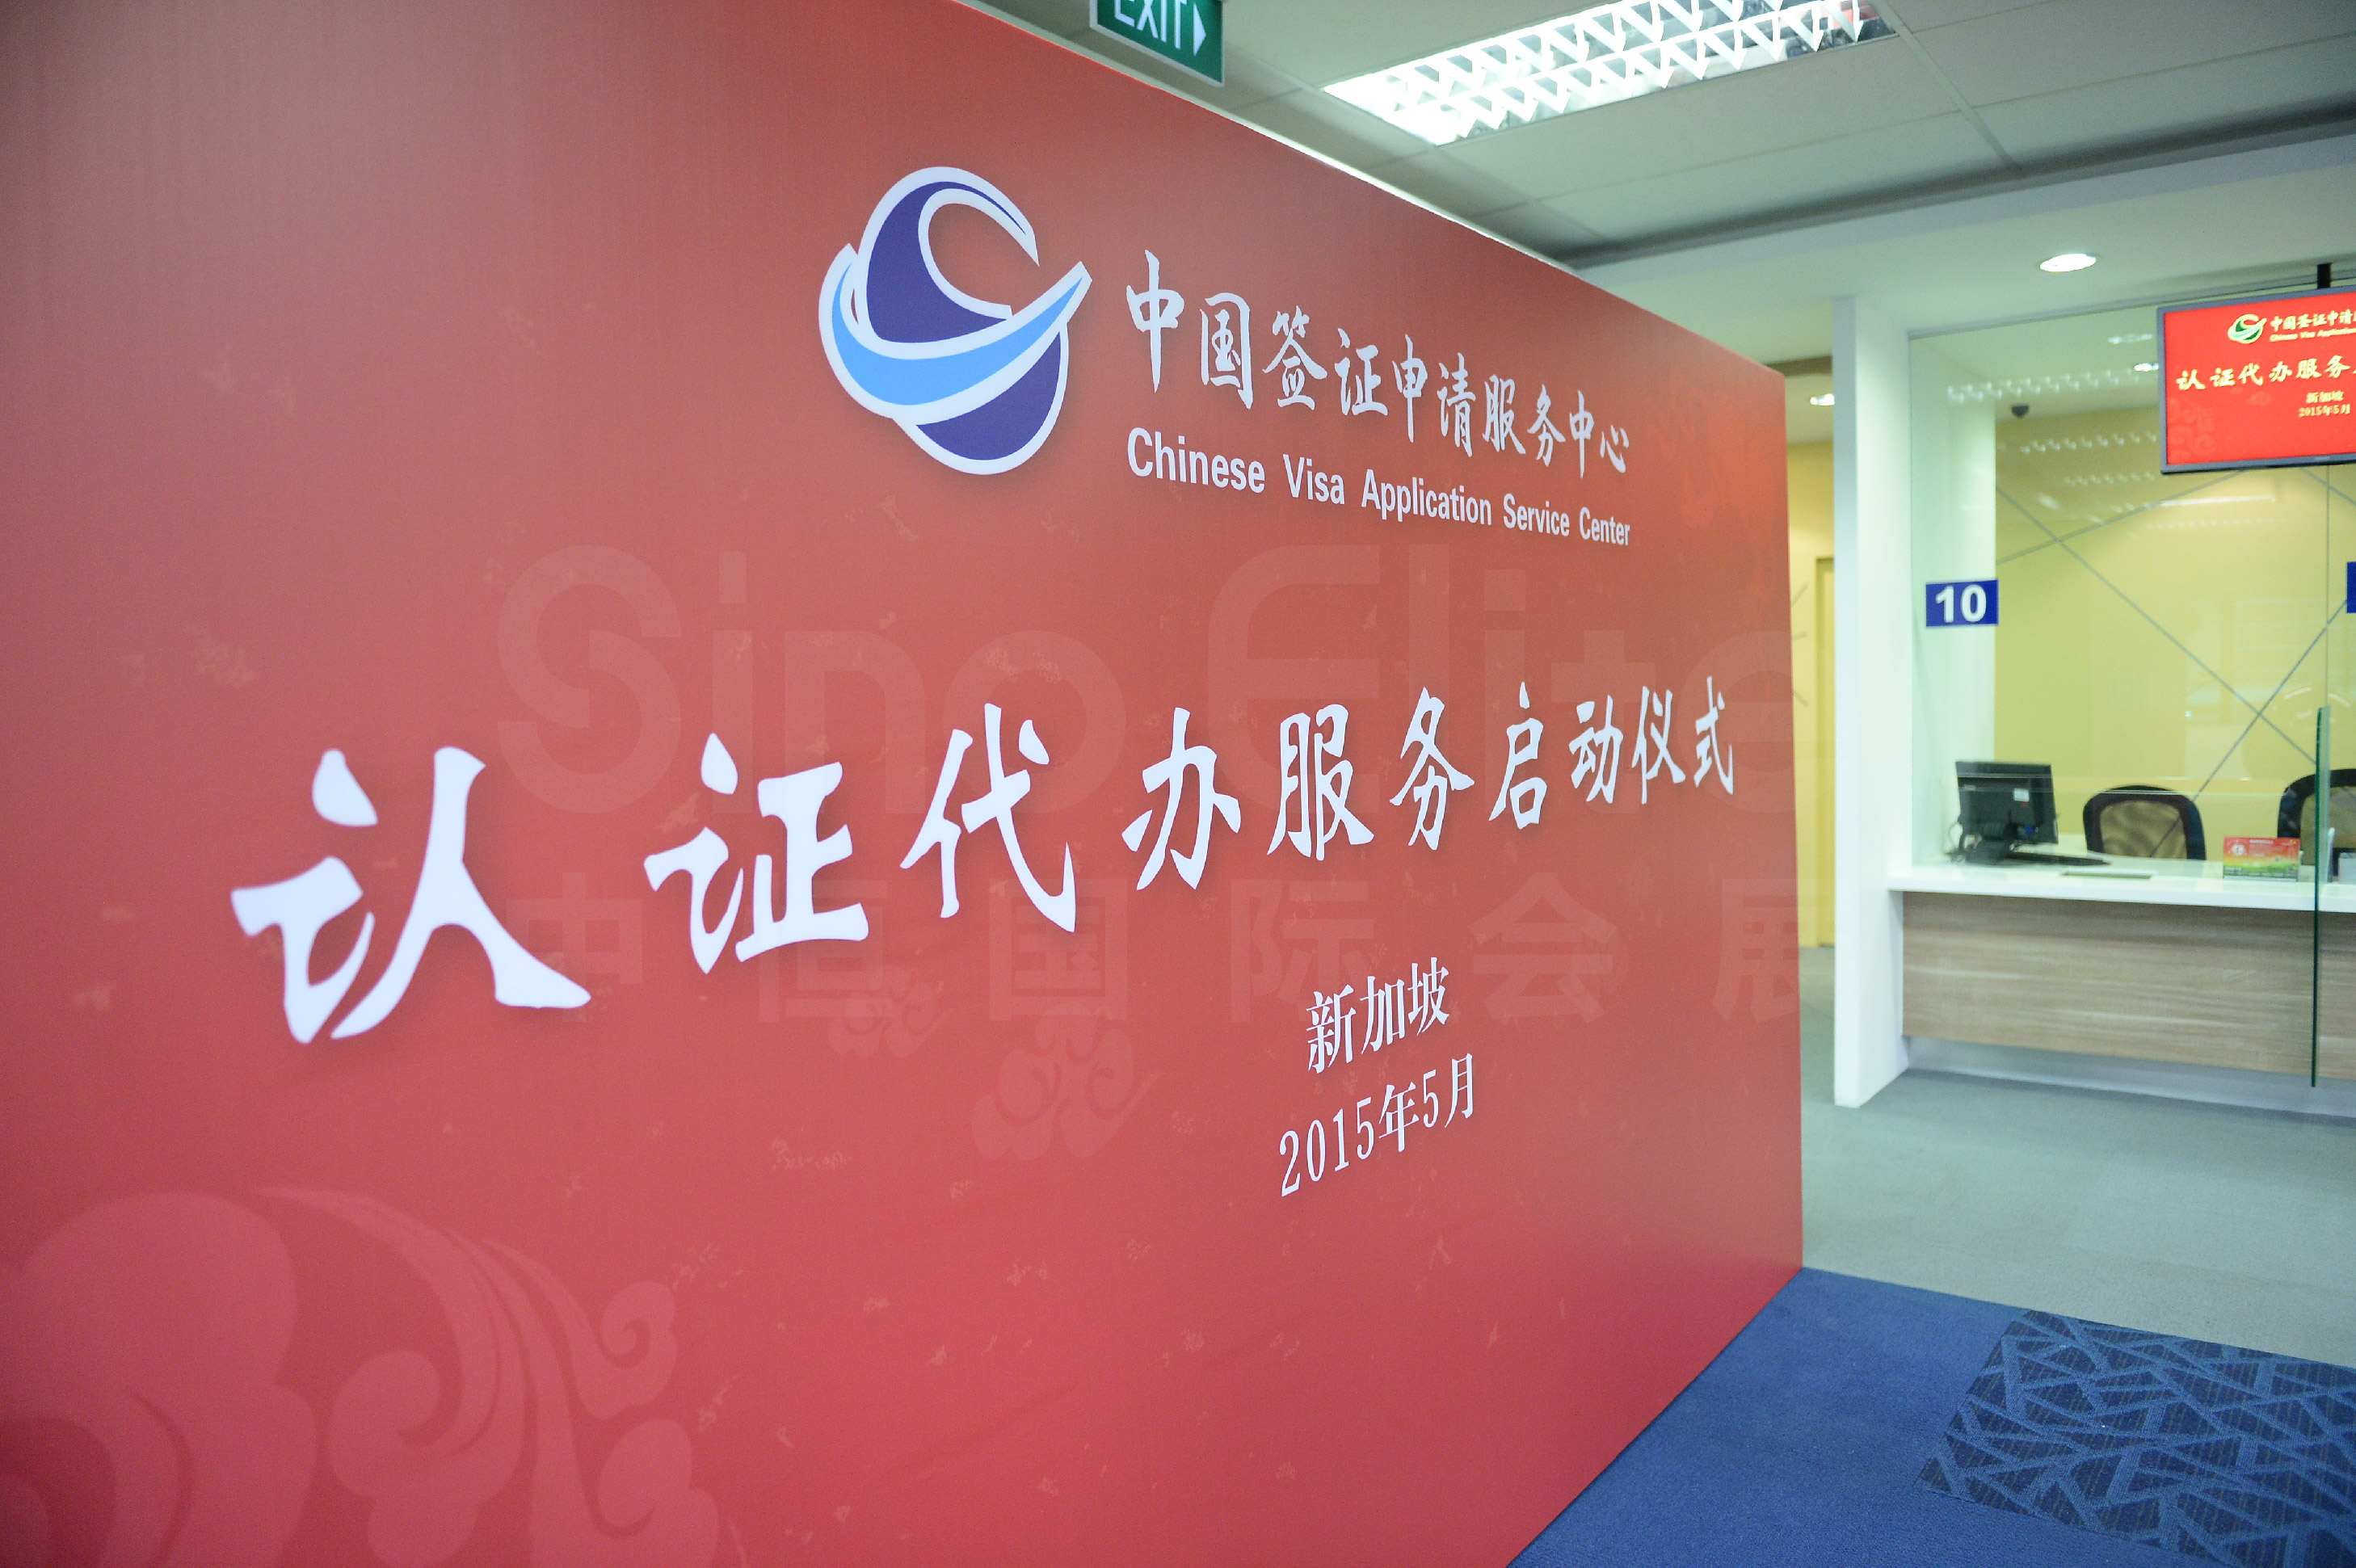 新加坡中国签证中心开业庆典-中国驻全球大使及参赞莅临